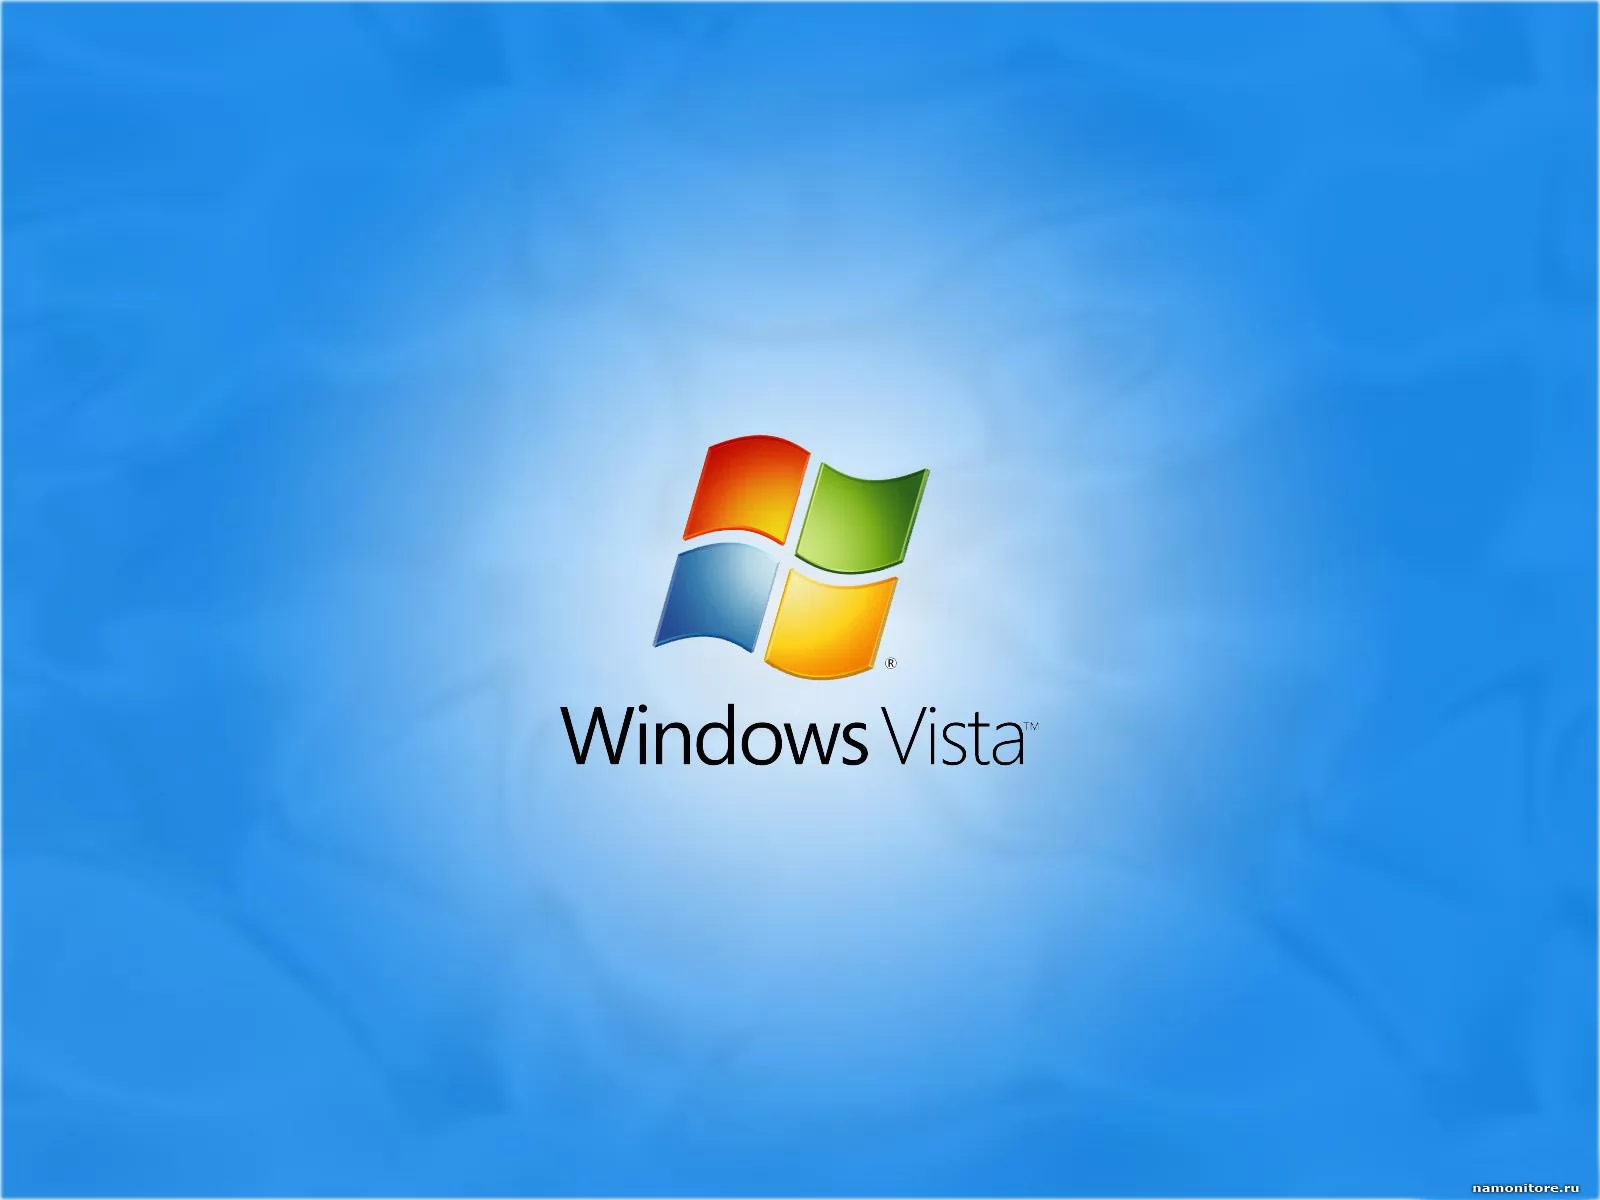 Windows Vista, компьютеры и программы, рисованное, синее х